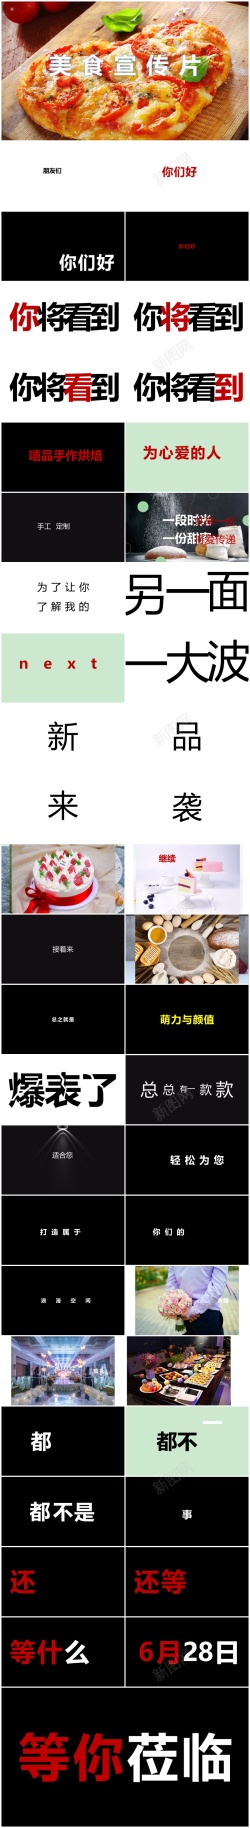 企业形象宣传片86酷炫快闪美食宣传片ppt模板